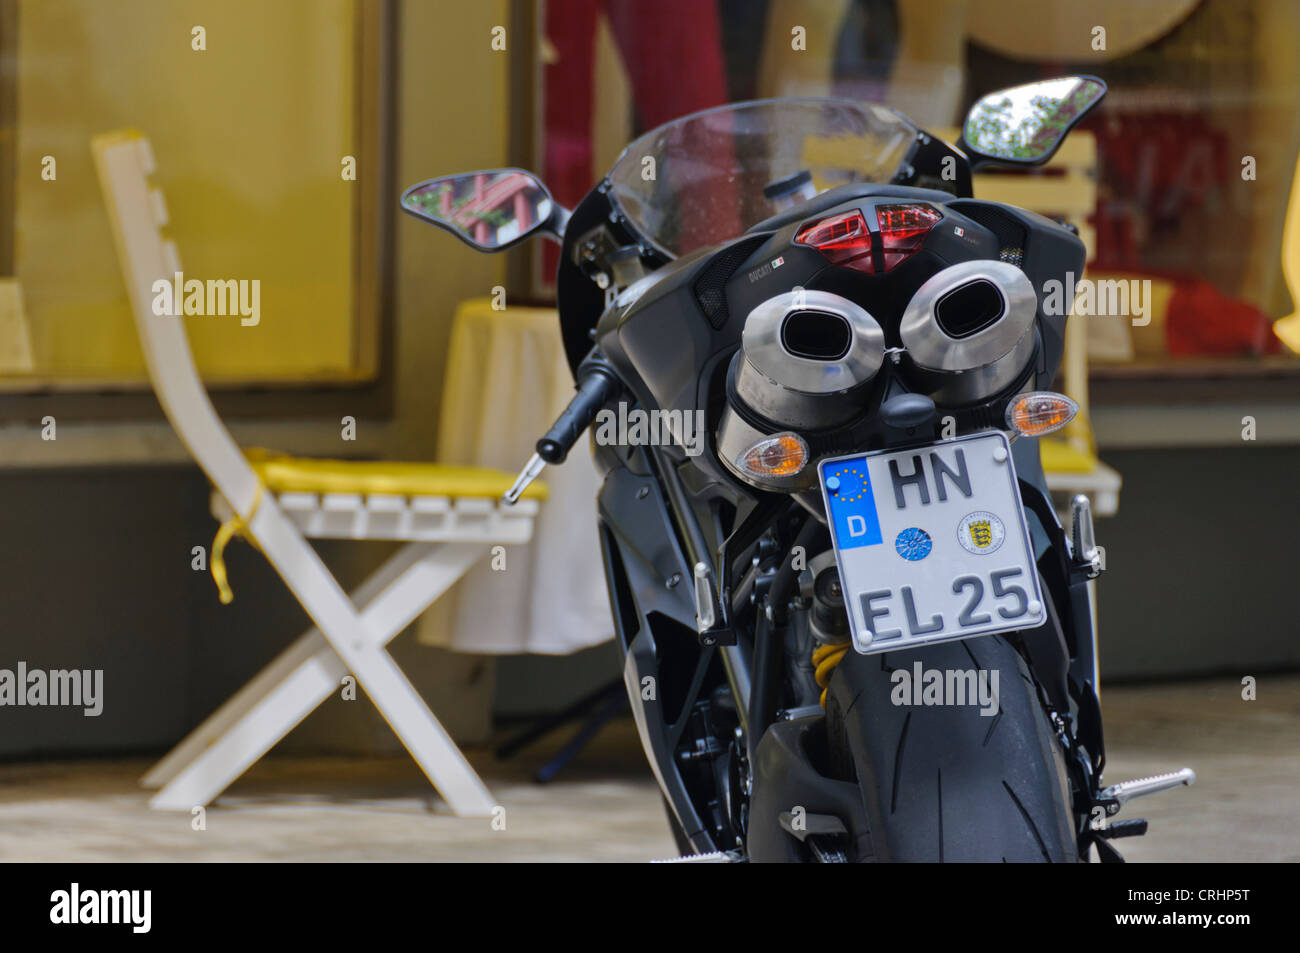 Ducati Moto Les tuyaux d'échappement à l'arrière de la plaque  d'immatriculation allemande - Heilbronn Allemagne Photo Stock - Alamy